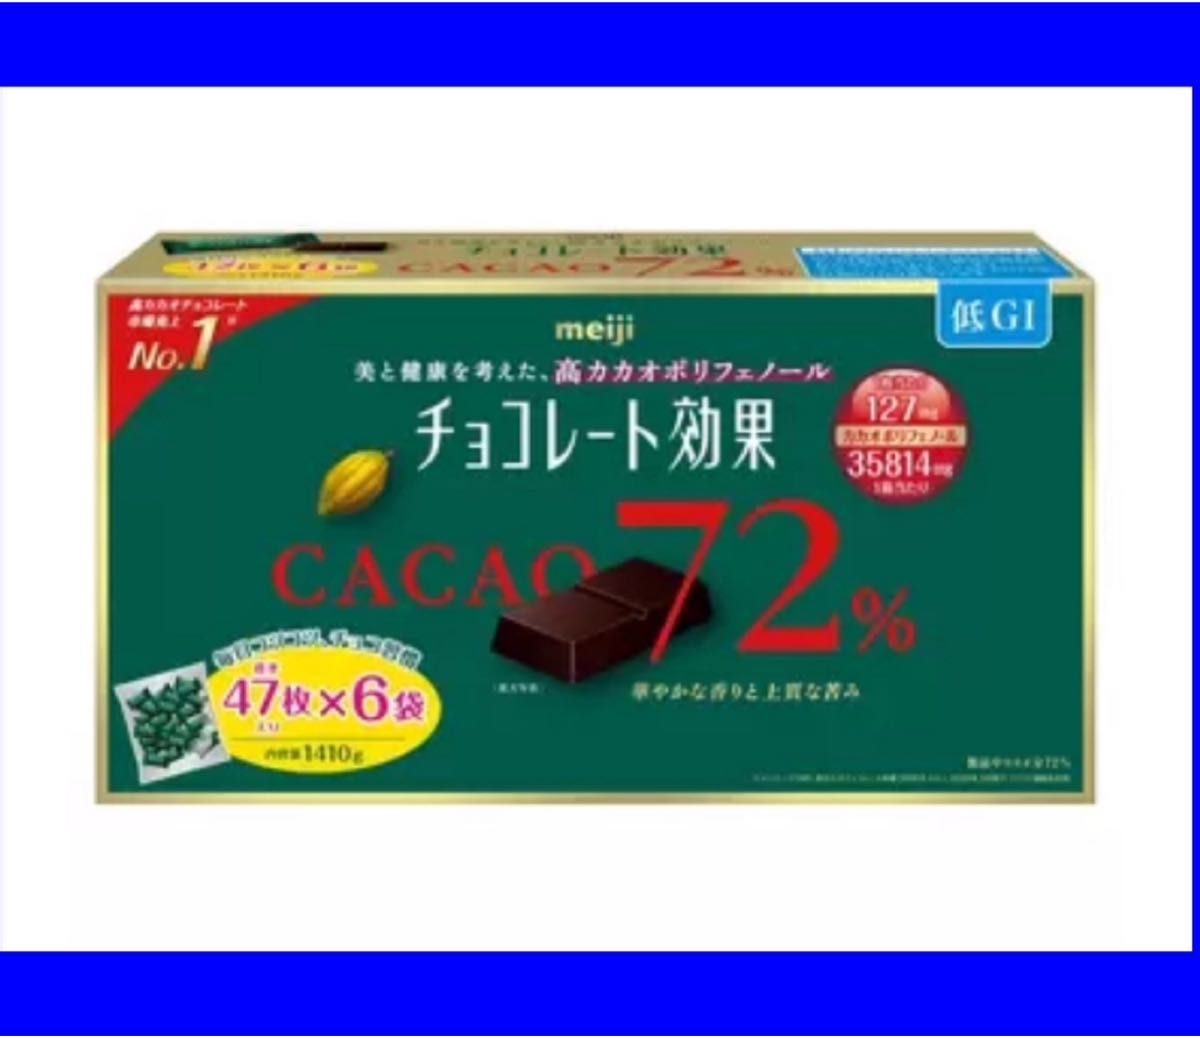 《明治》チョコレート効果 カカオ 72% 47枚入6袋  (282枚) コストコ